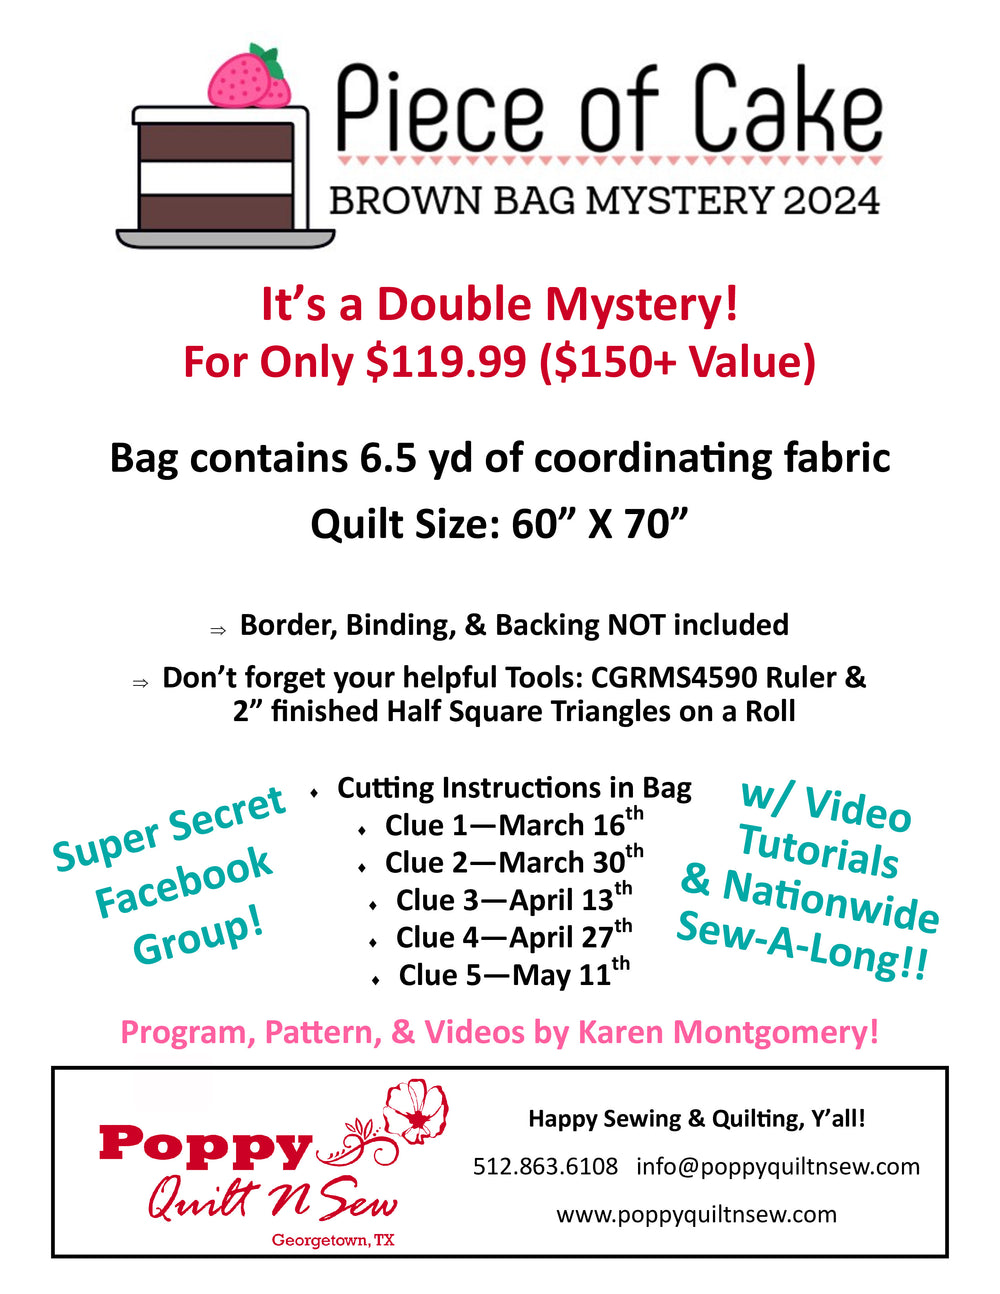 Brown Bag Mystery 2024 / Butterfly Fields in Green